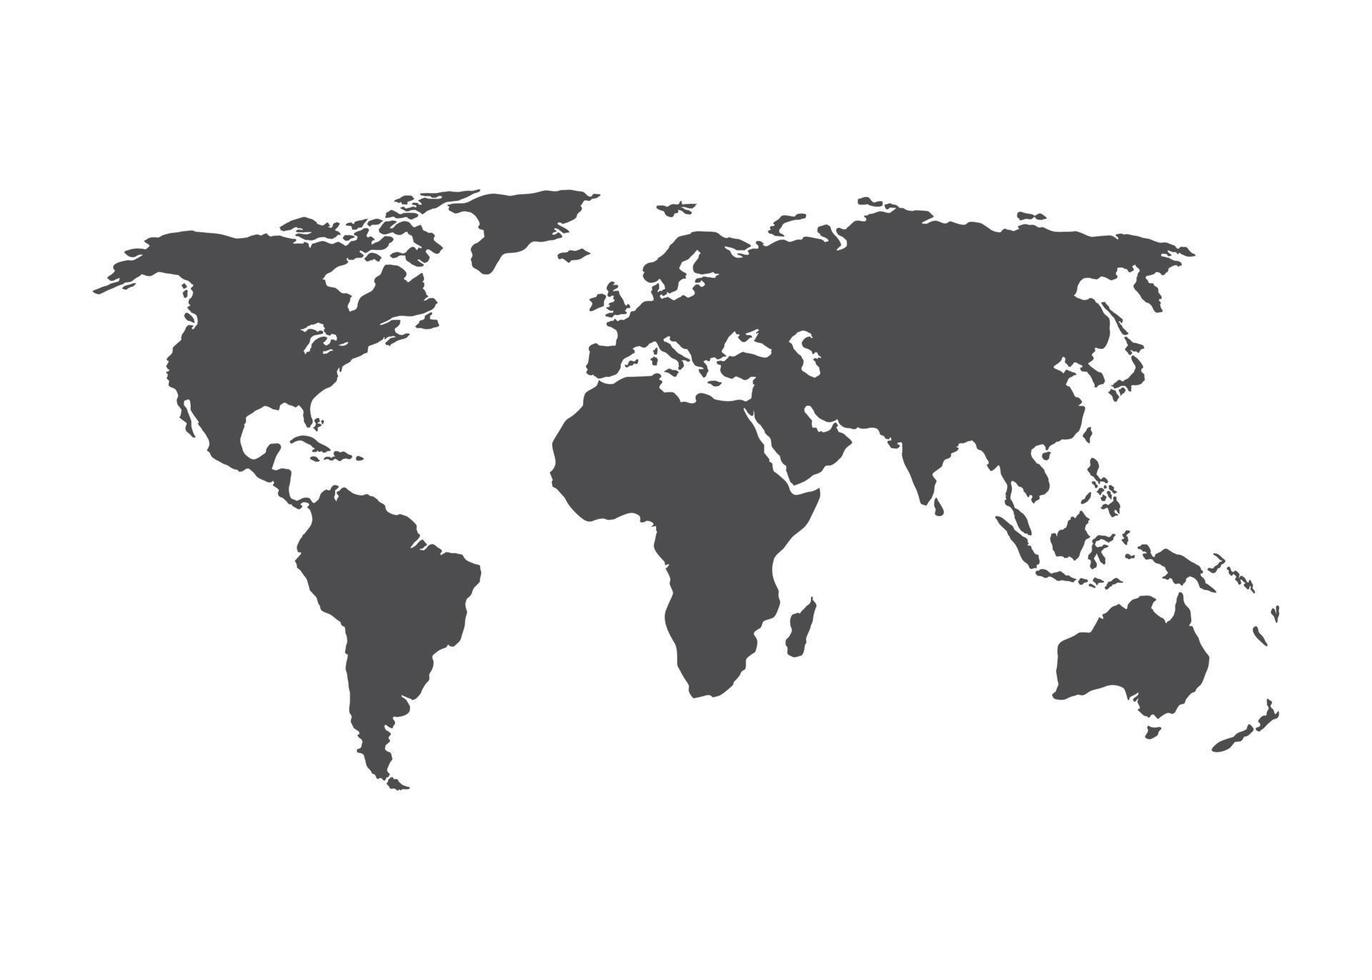 ilustración del mapa del mundo vector